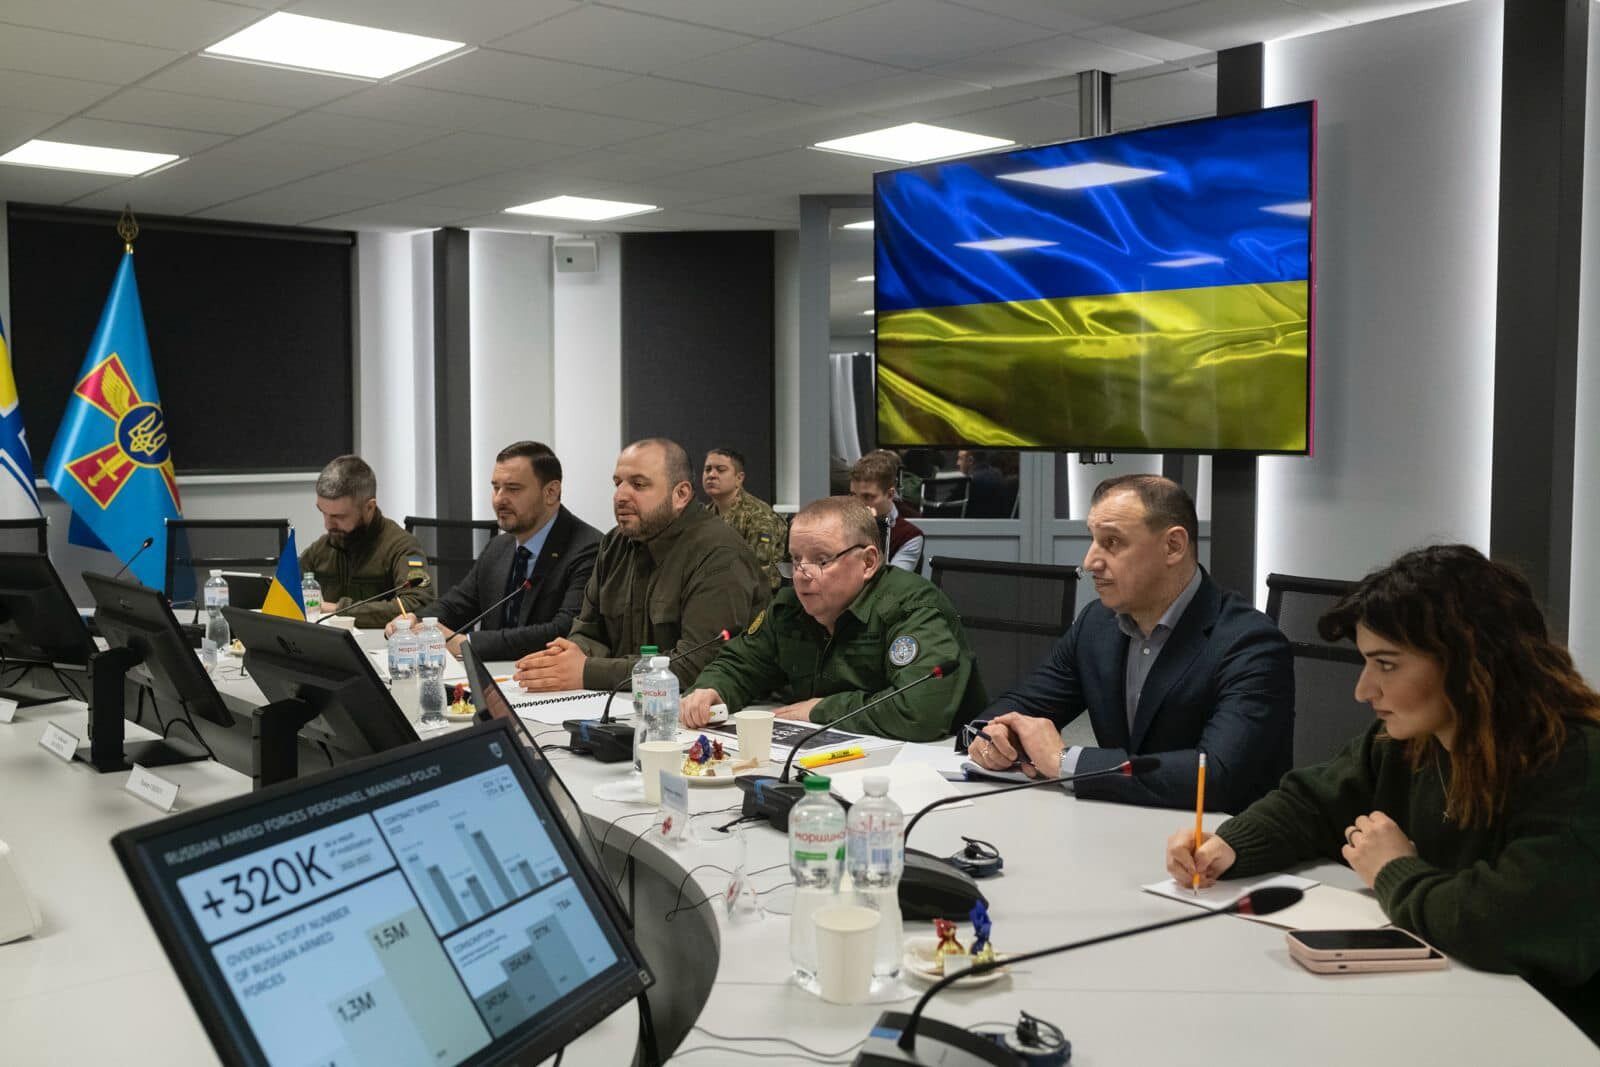 Україна ініціює форум оборонних індустрій із країнами Балтії: Умєров розповів про переговори  з главою МЗС Литви